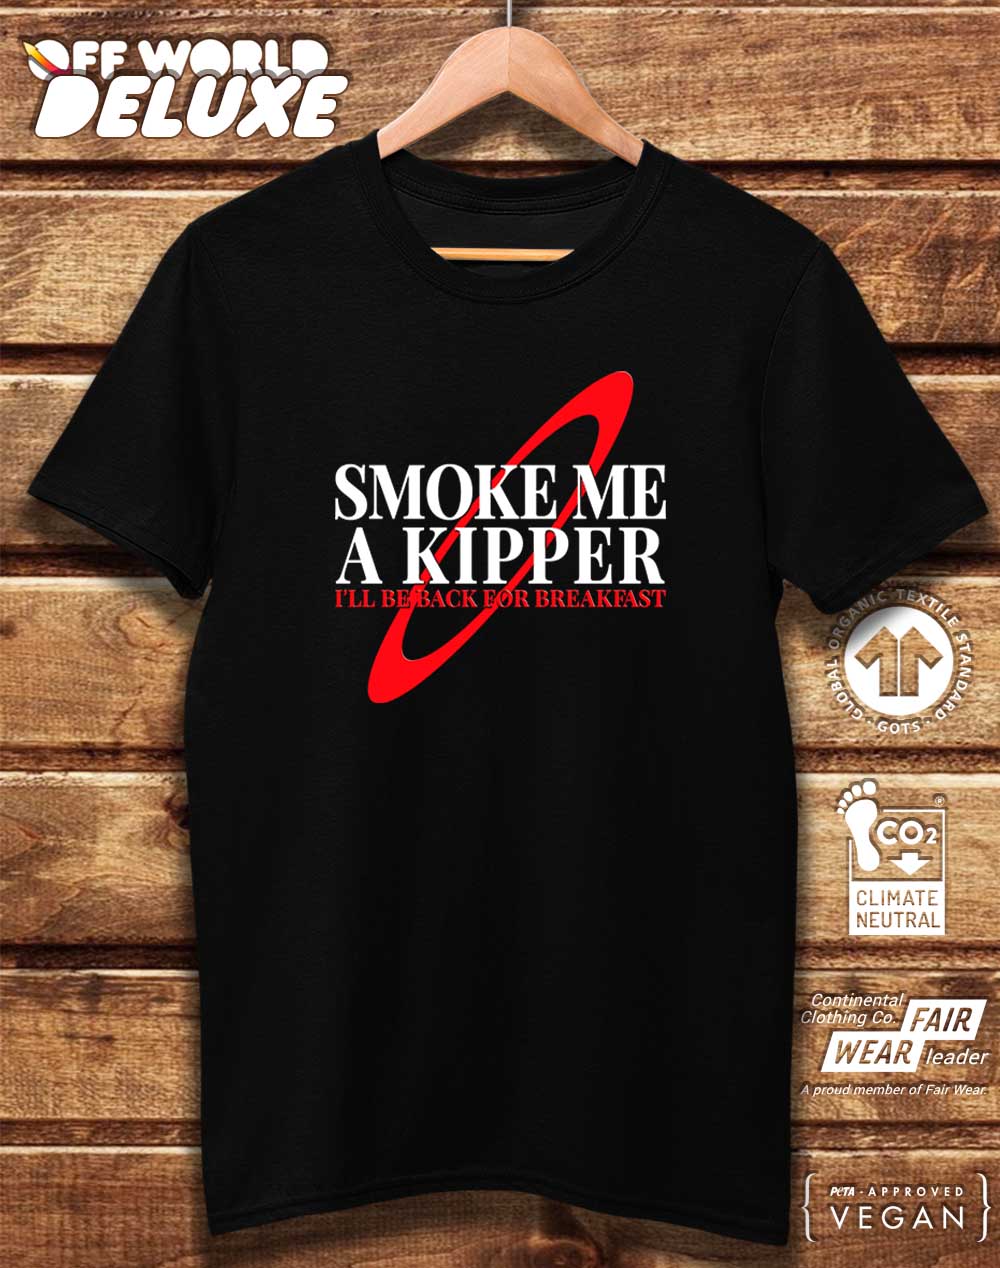 DELUXE Smoke Me a Kipper Organic Cotton T-Shirt